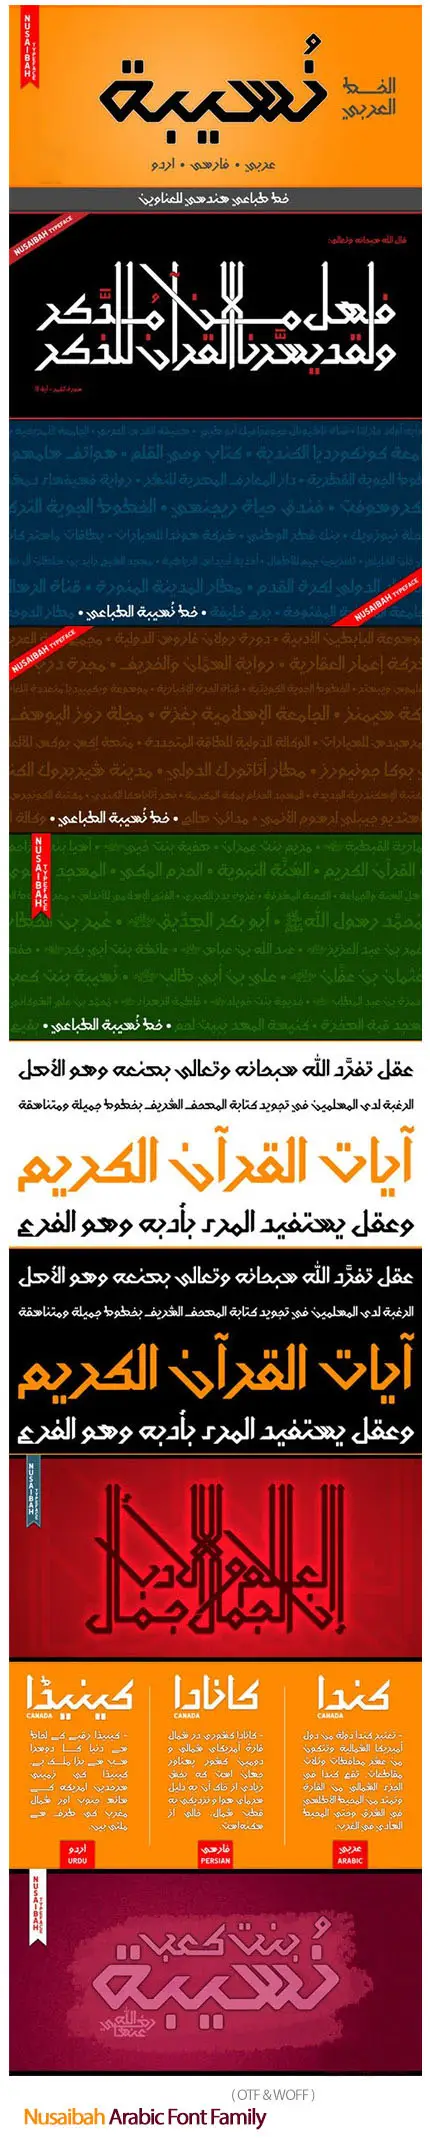 Nusaibah Arabic Font Family